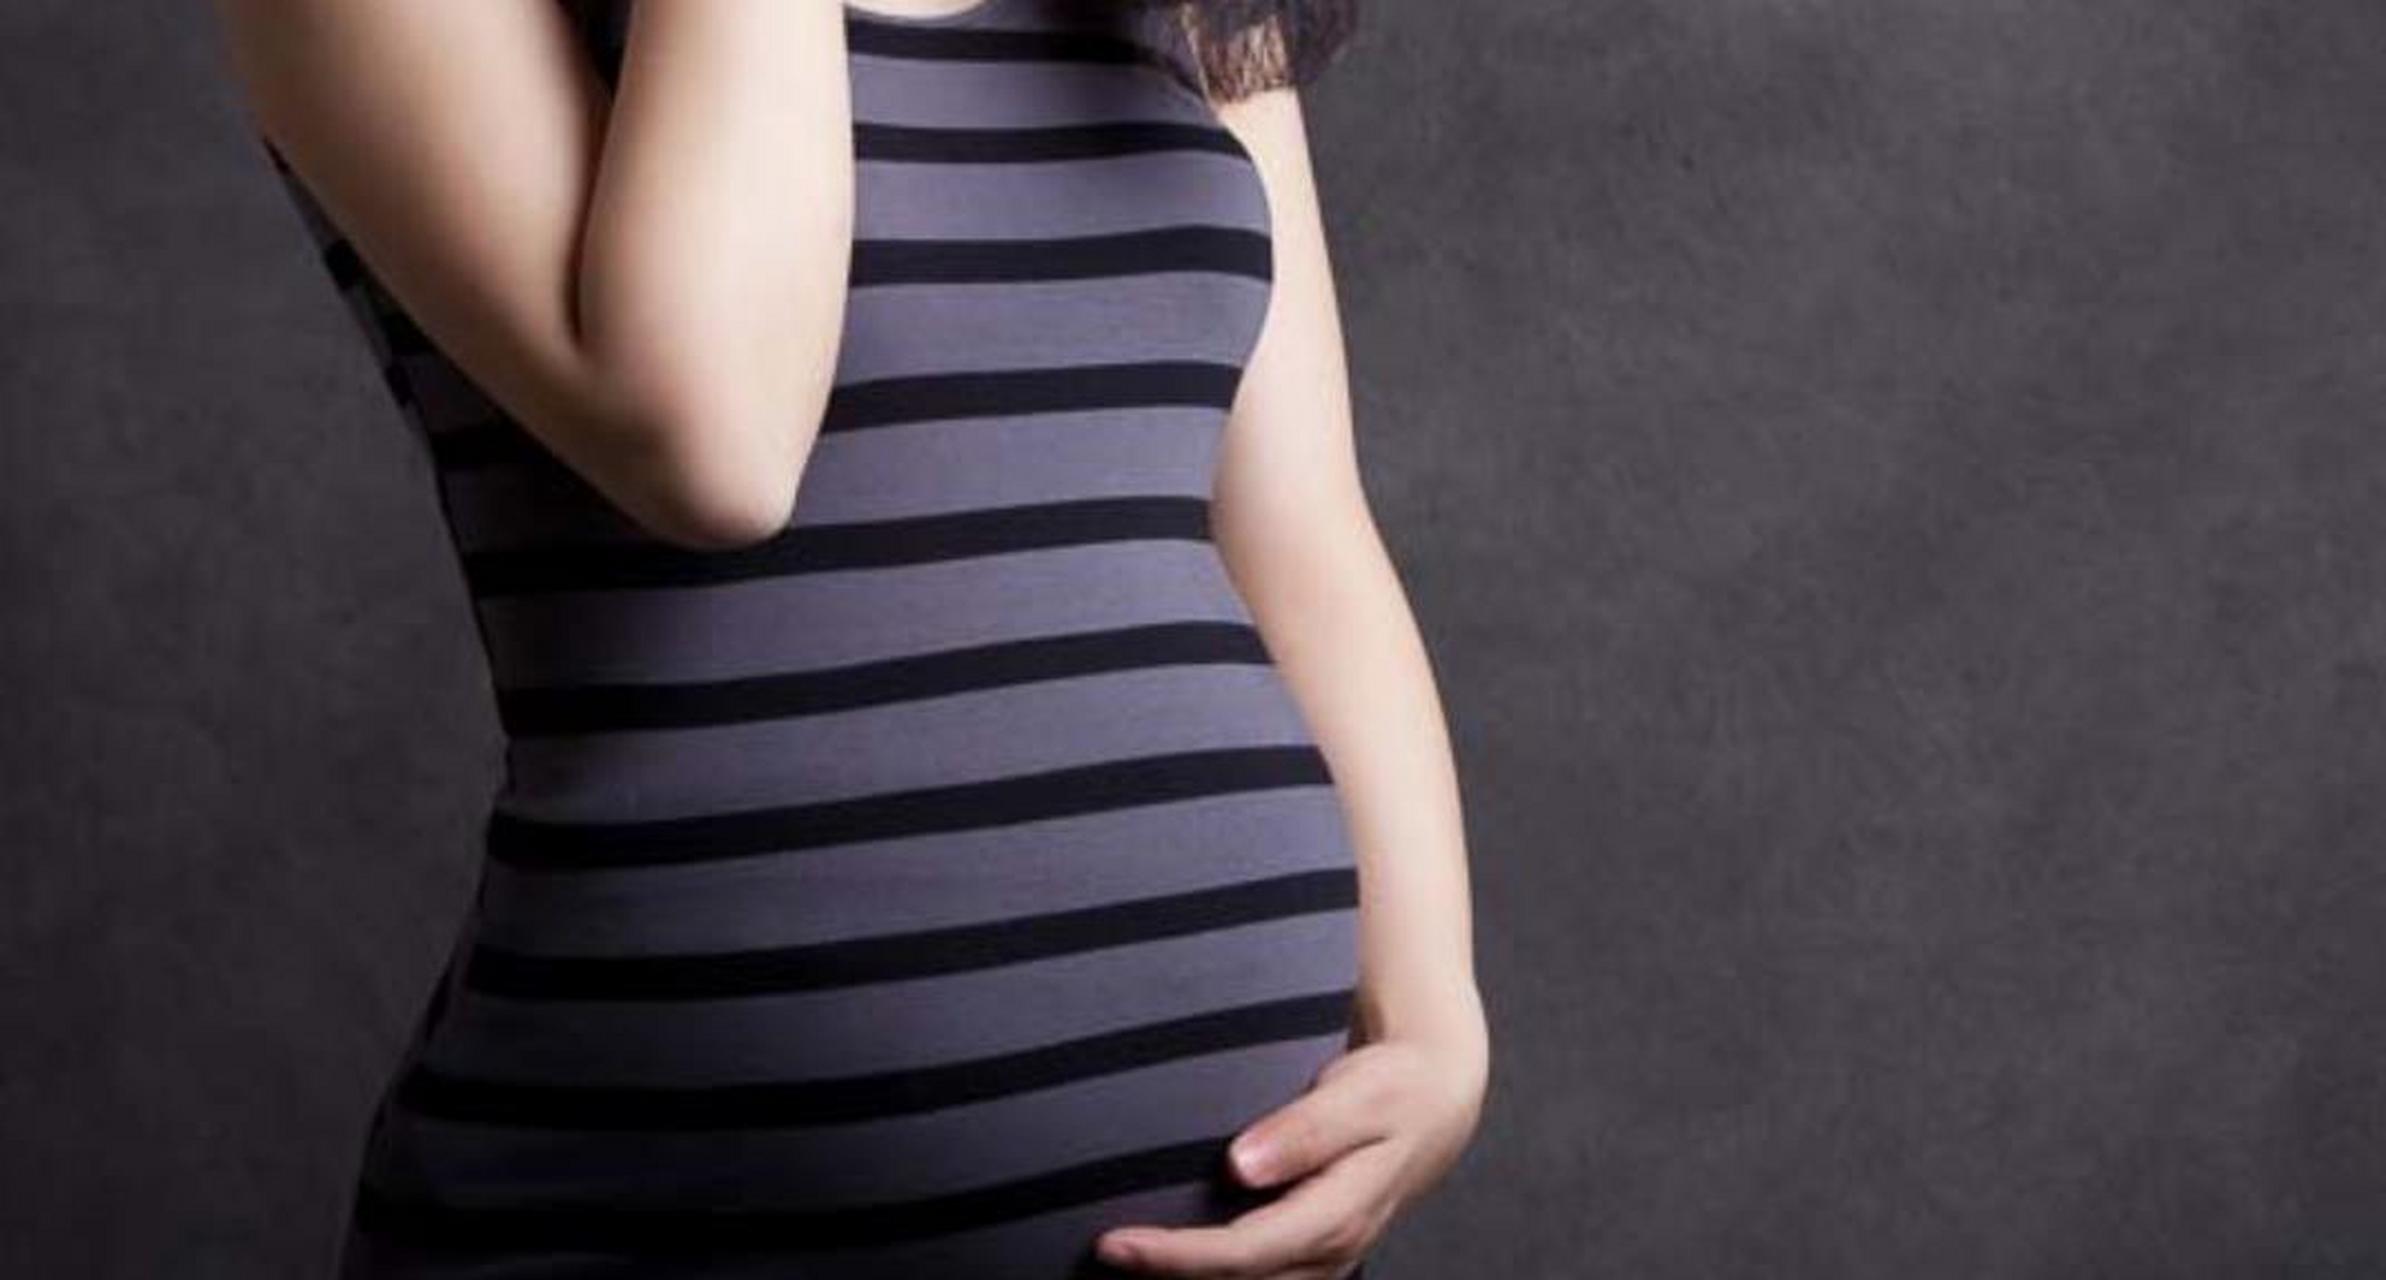 如果看到一个大肚子孕妇在建筑工地和多人发生性关系,你会怎么想?